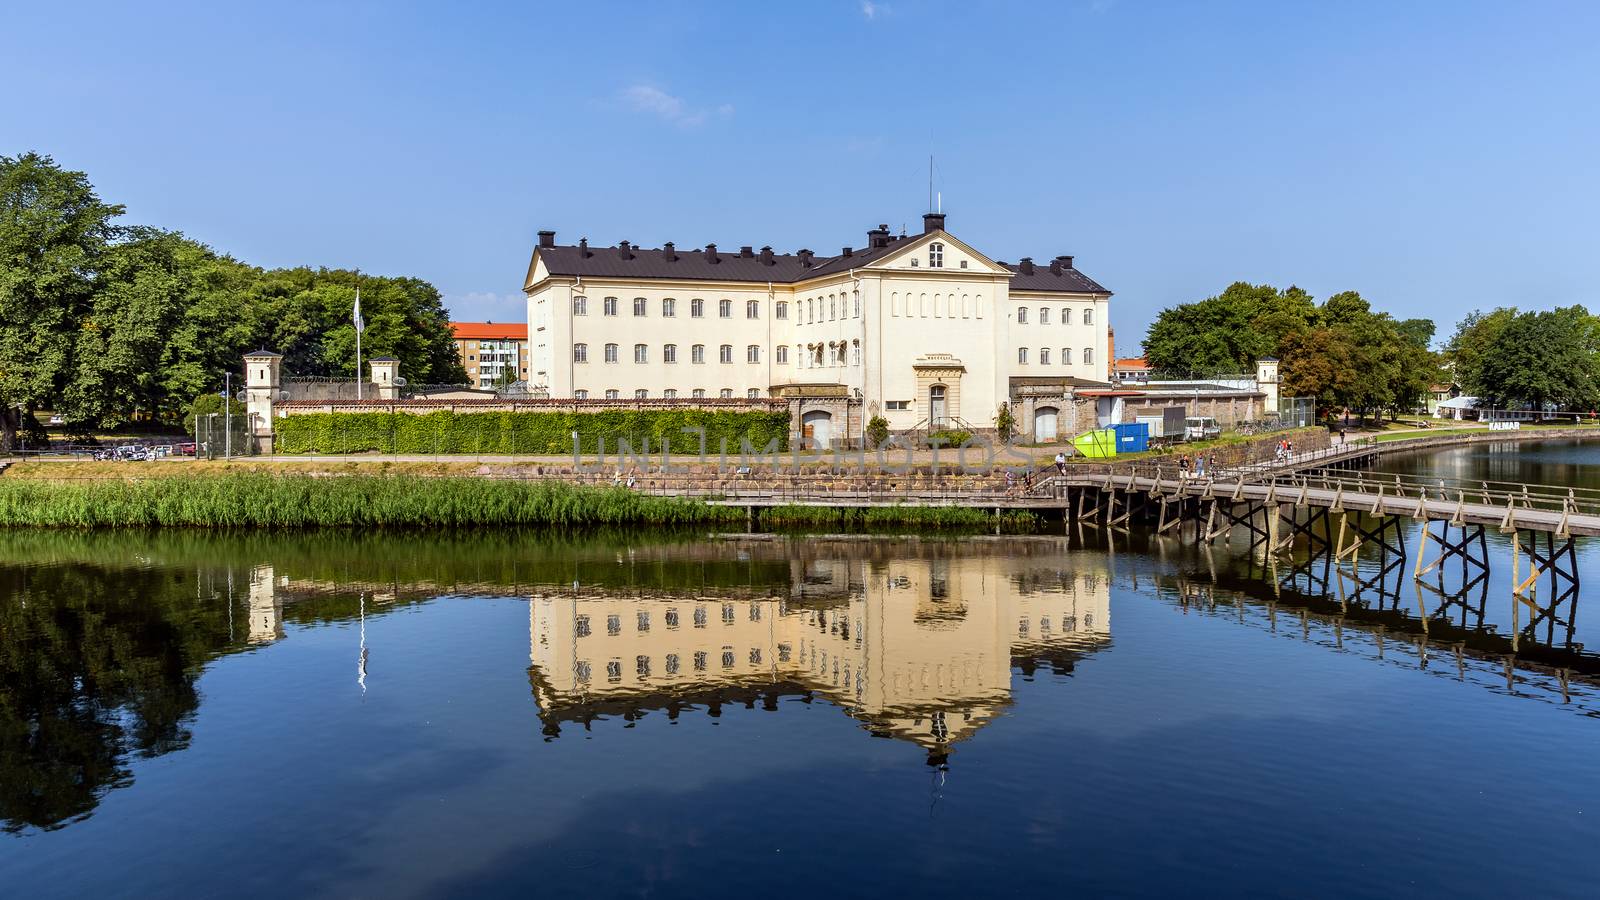 The Kalmar Prison by pawel_szczepanski